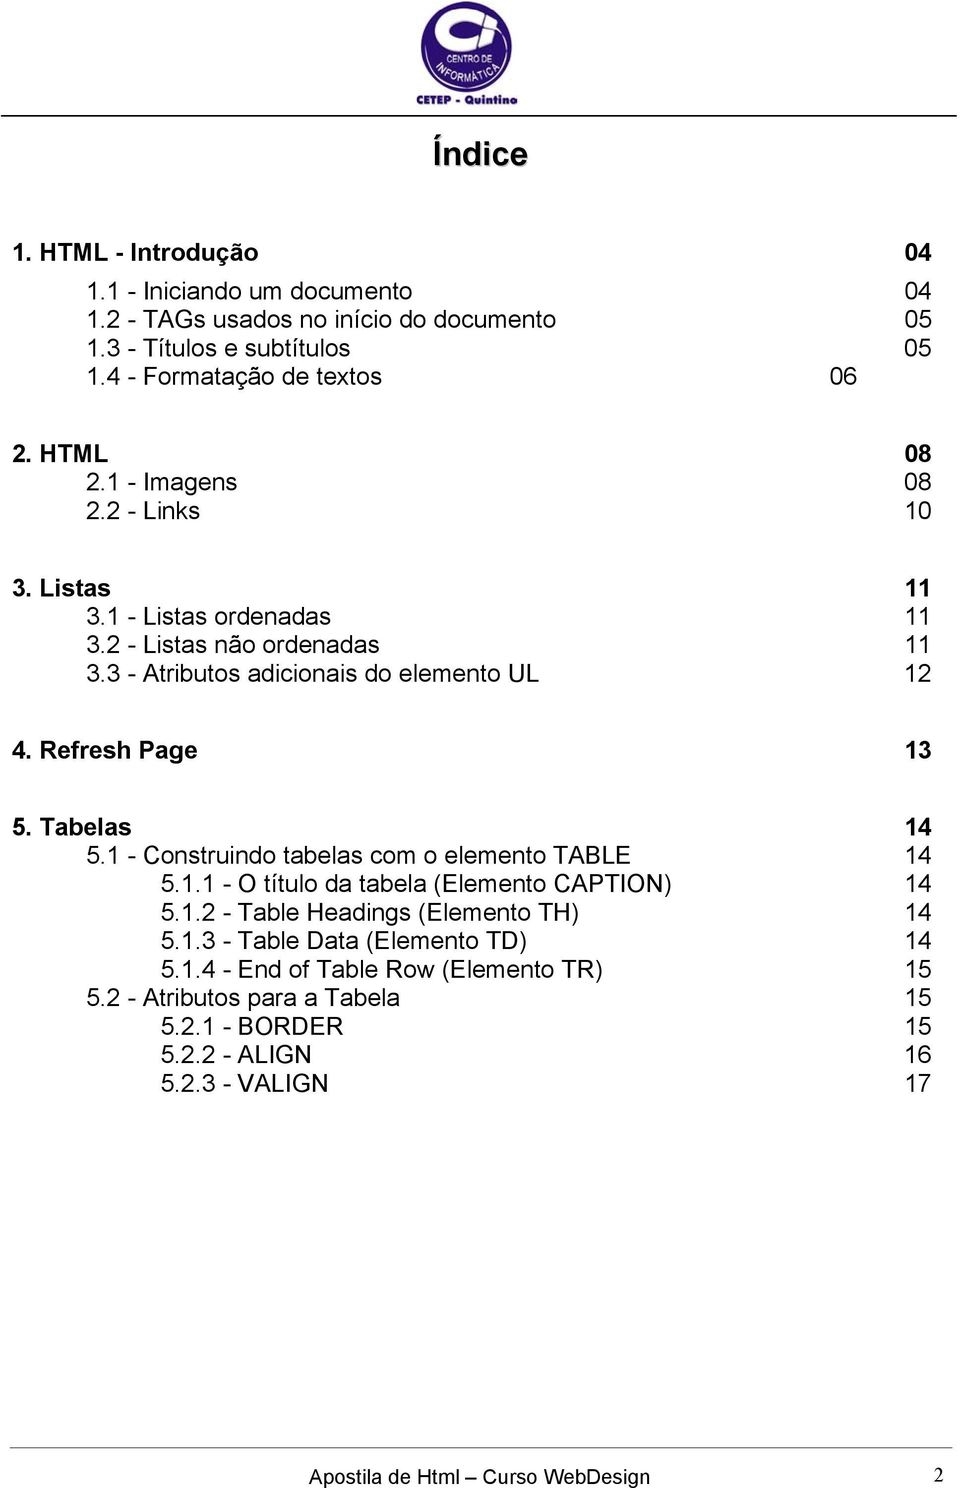 Refresh Page 13 5. Tabelas 14 5.1 - Construindo tabelas com o elemento TABLE 14 5.1.1 - O título da tabela (Elemento CAPTION) 14 5.1.2 - Table Headings (Elemento TH) 14 5.1.3 - Table Data (Elemento TD) 14 5.